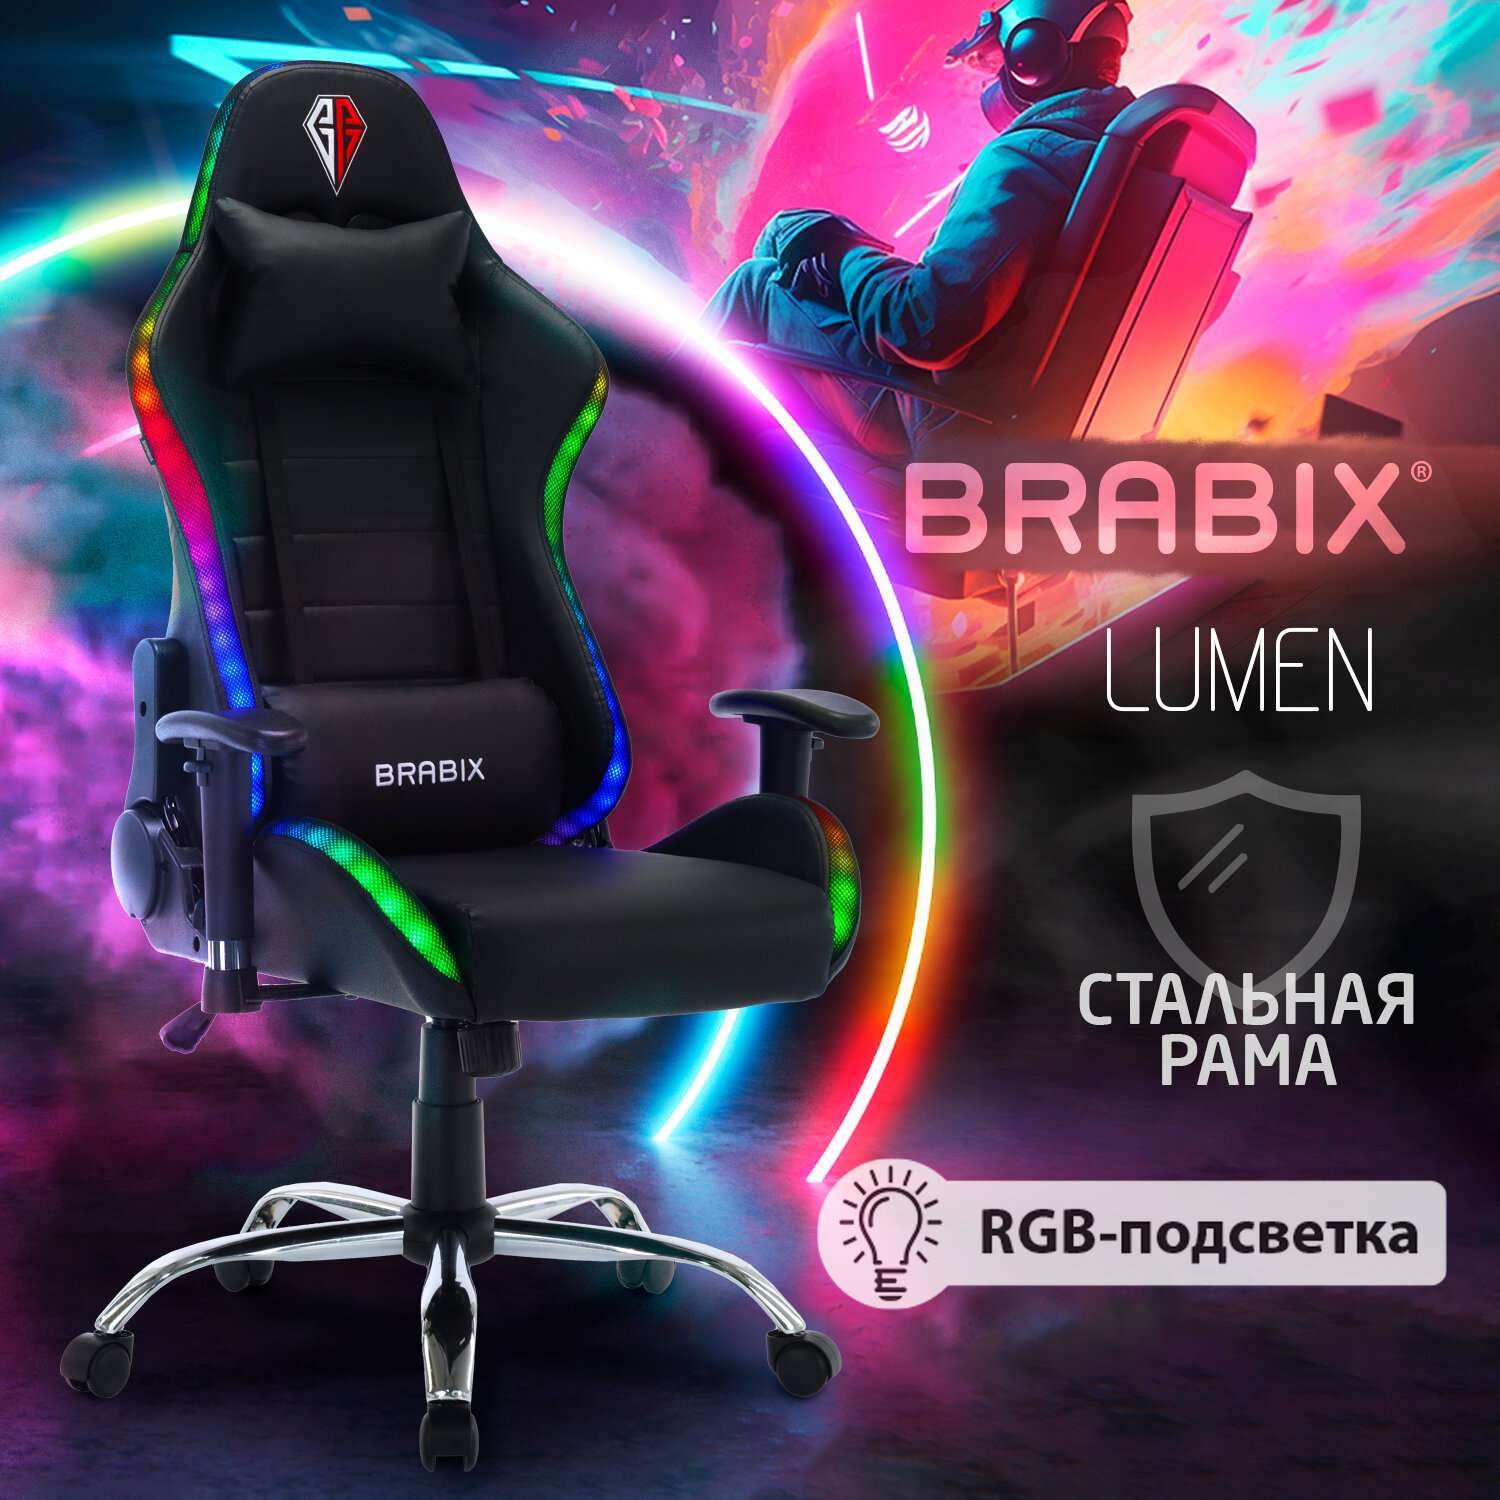 Кресло компьютерное Brabix Игровое офисное Lumen Gm-150 Rgb подсветка две подушки экокожа - фото 2